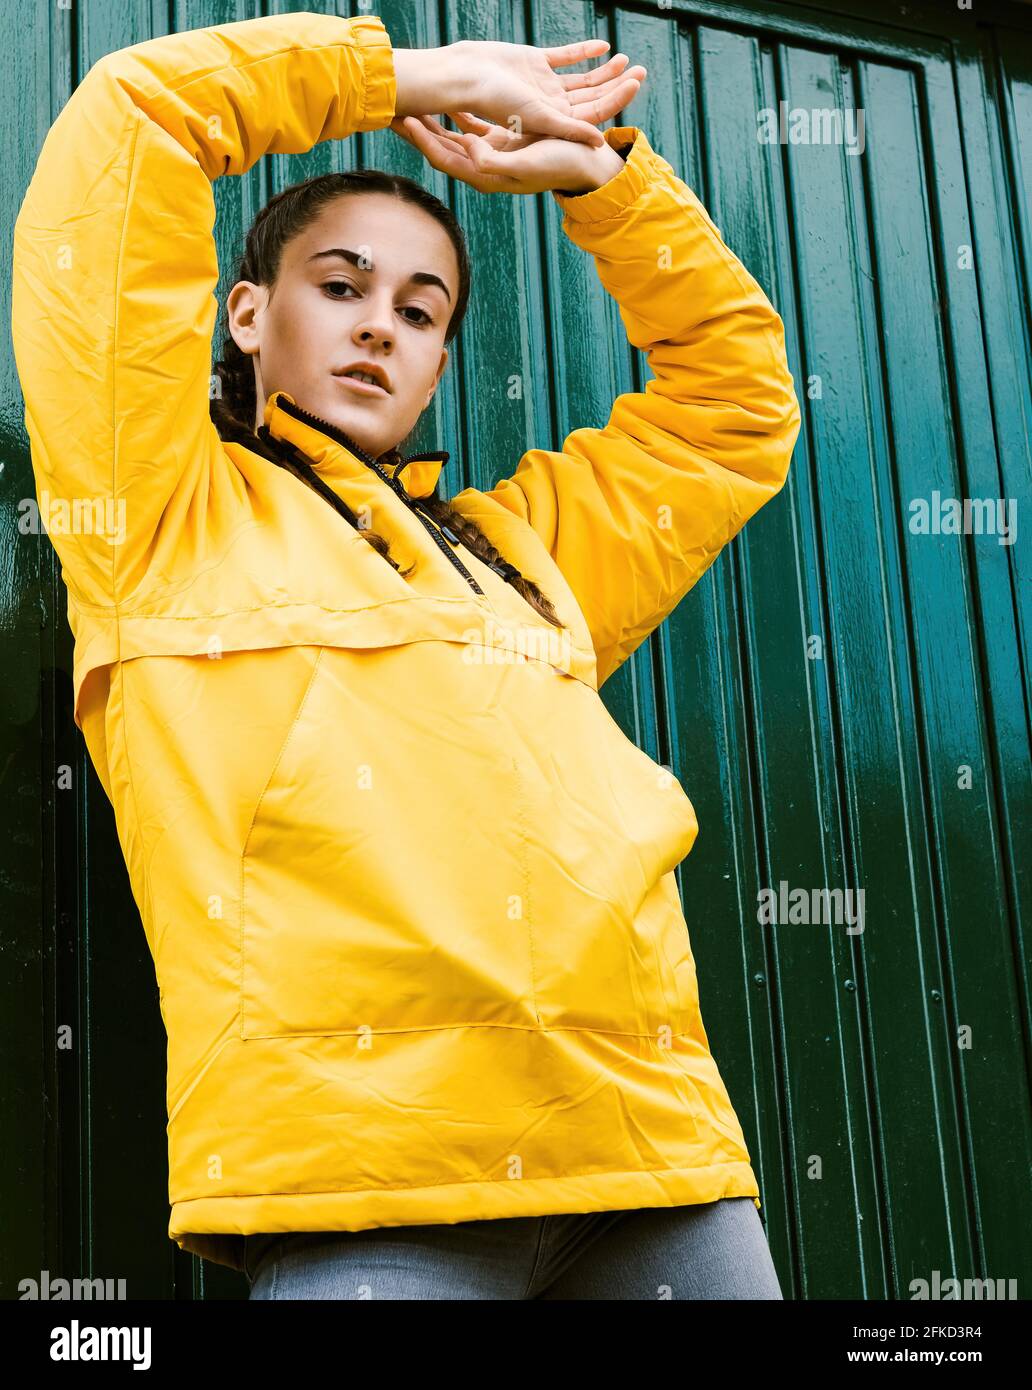 Portrait of teenage girl wearing yellow coat Stock Photo